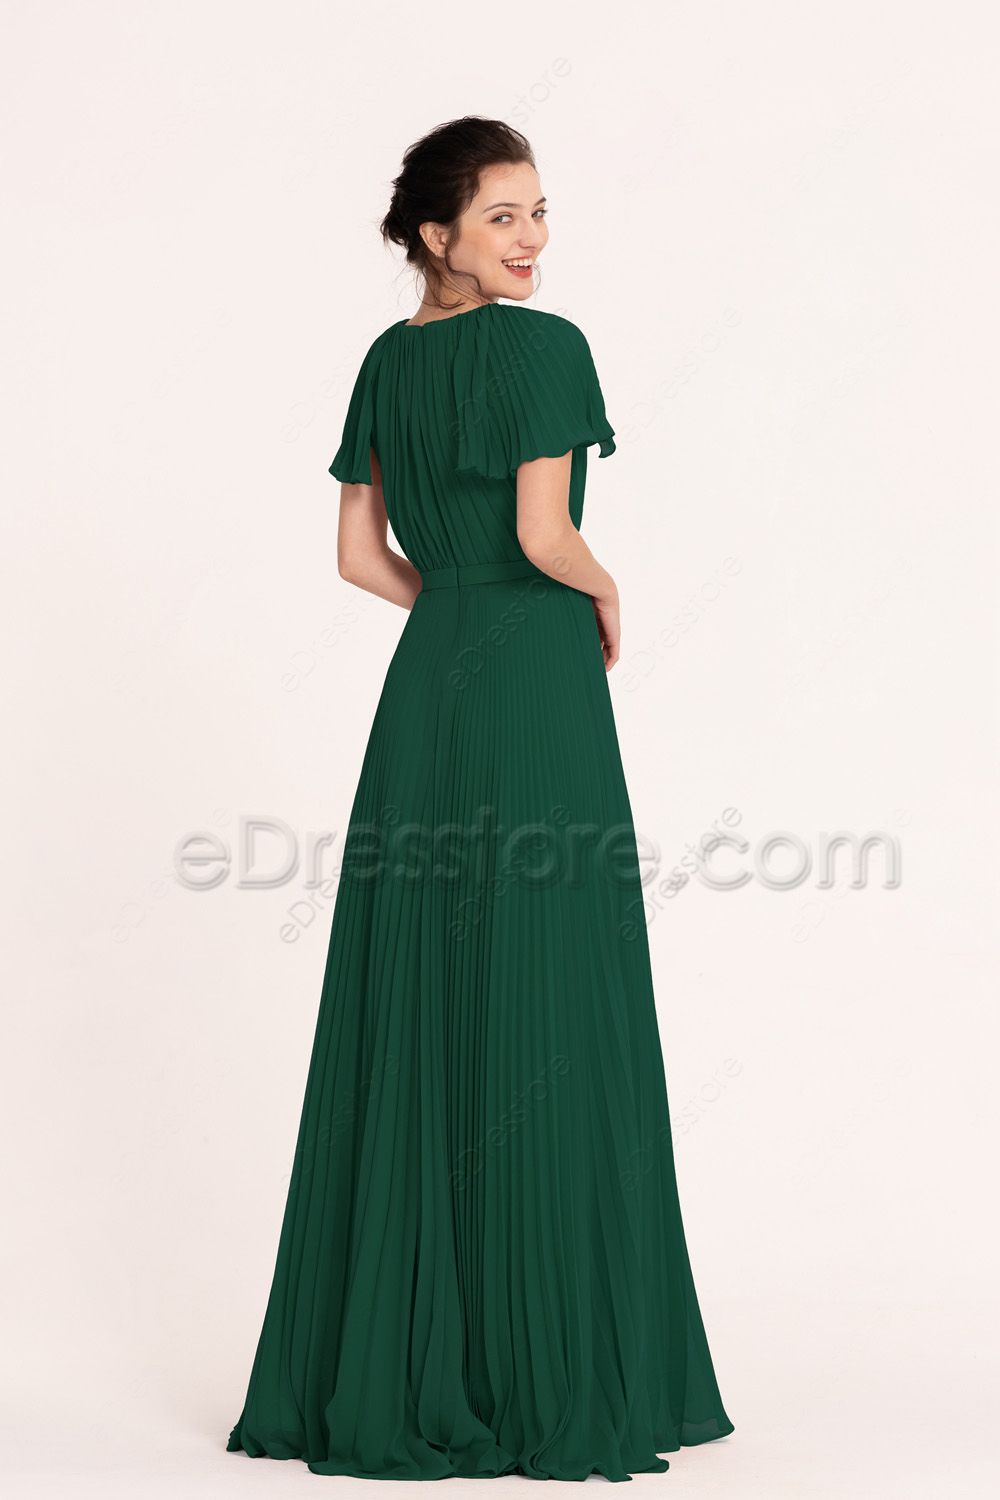 Modest LDS Dark Emerald Green Autumn Bridesmaid Dresses | eDresstore